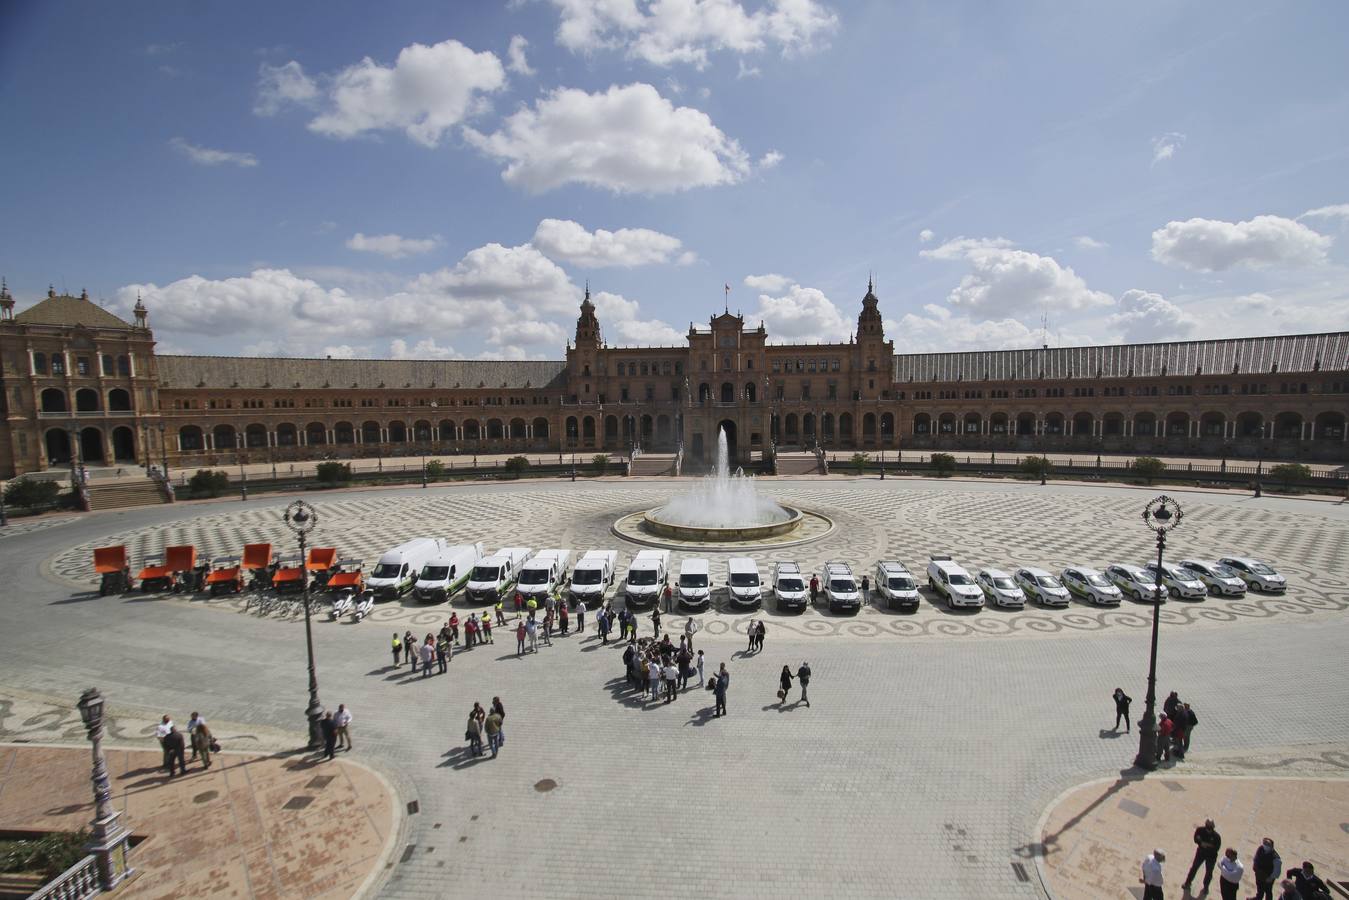 Presentación de la nueva flota de vehículos en la Plaza de España